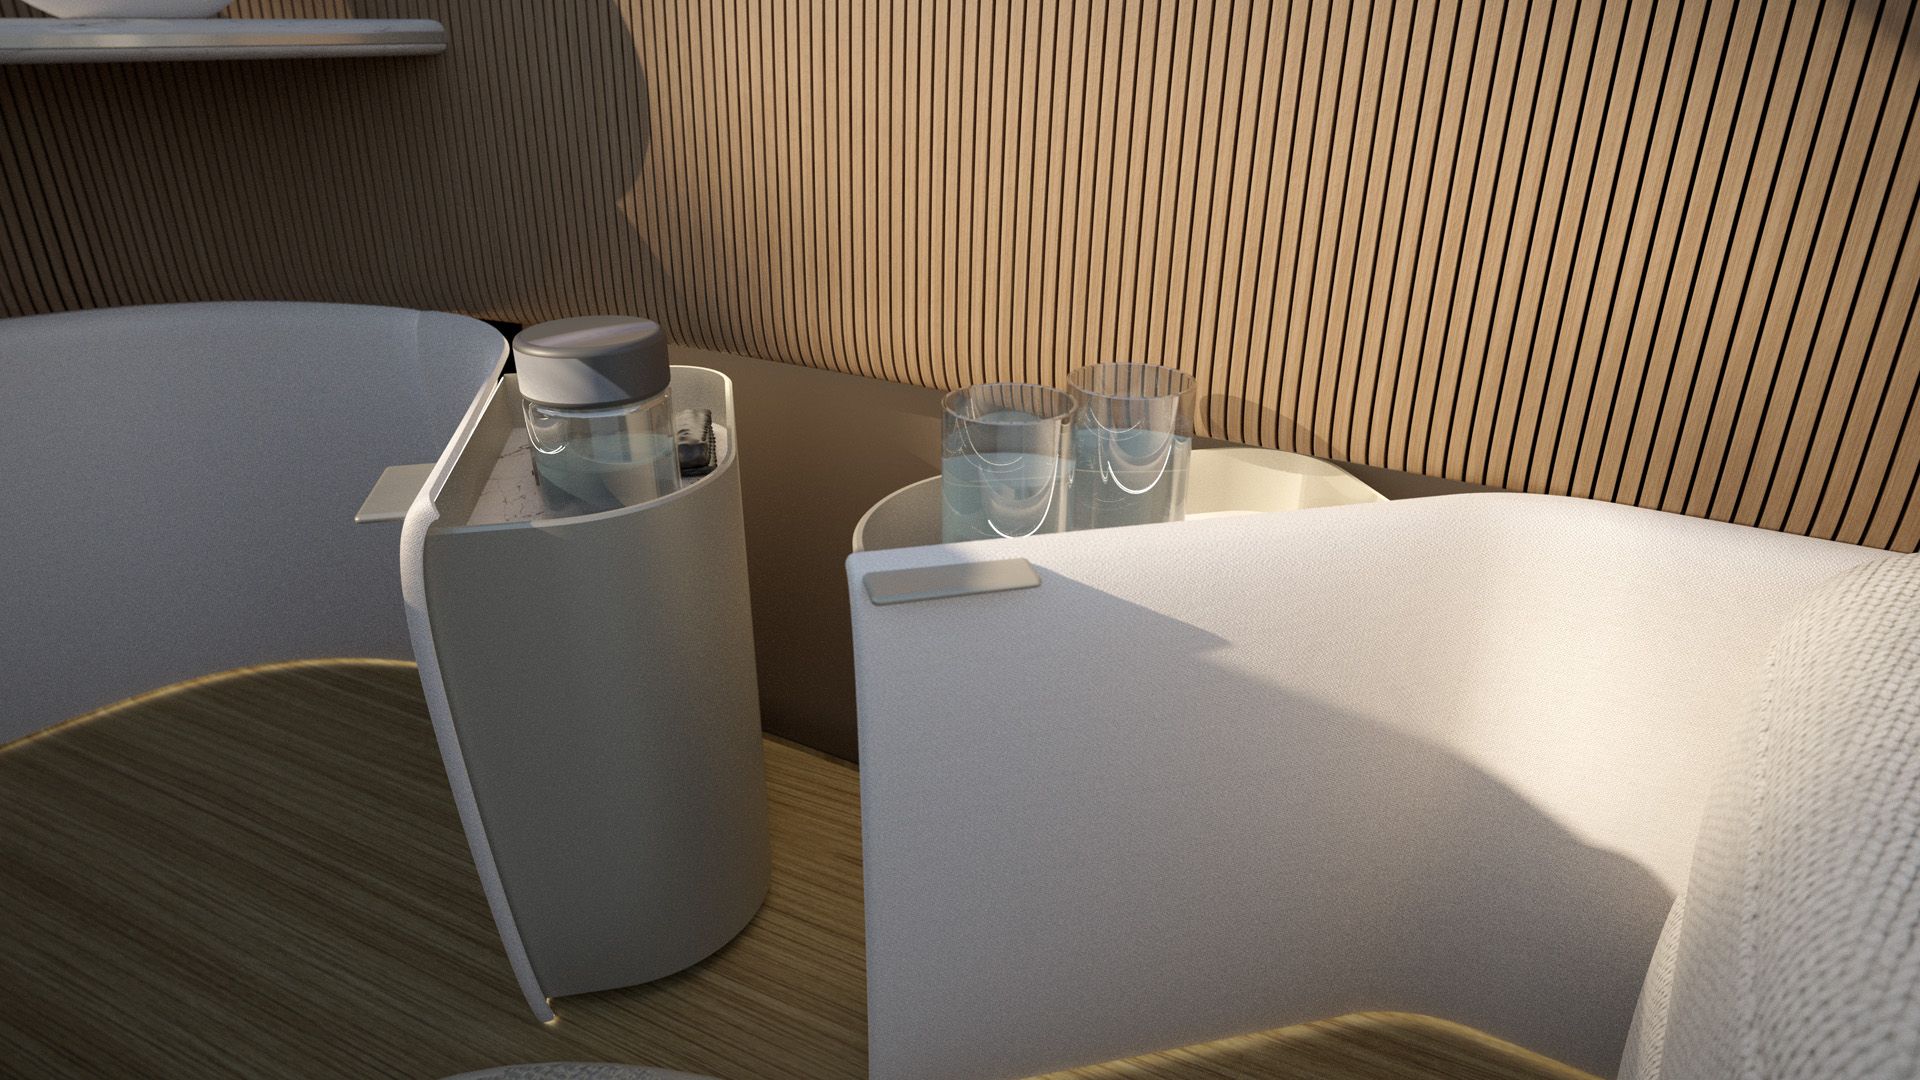 Poliform'un Audi urbansphere concept için iç tasarımındaki koltuklar, içecek tutucular bulunduruyor.